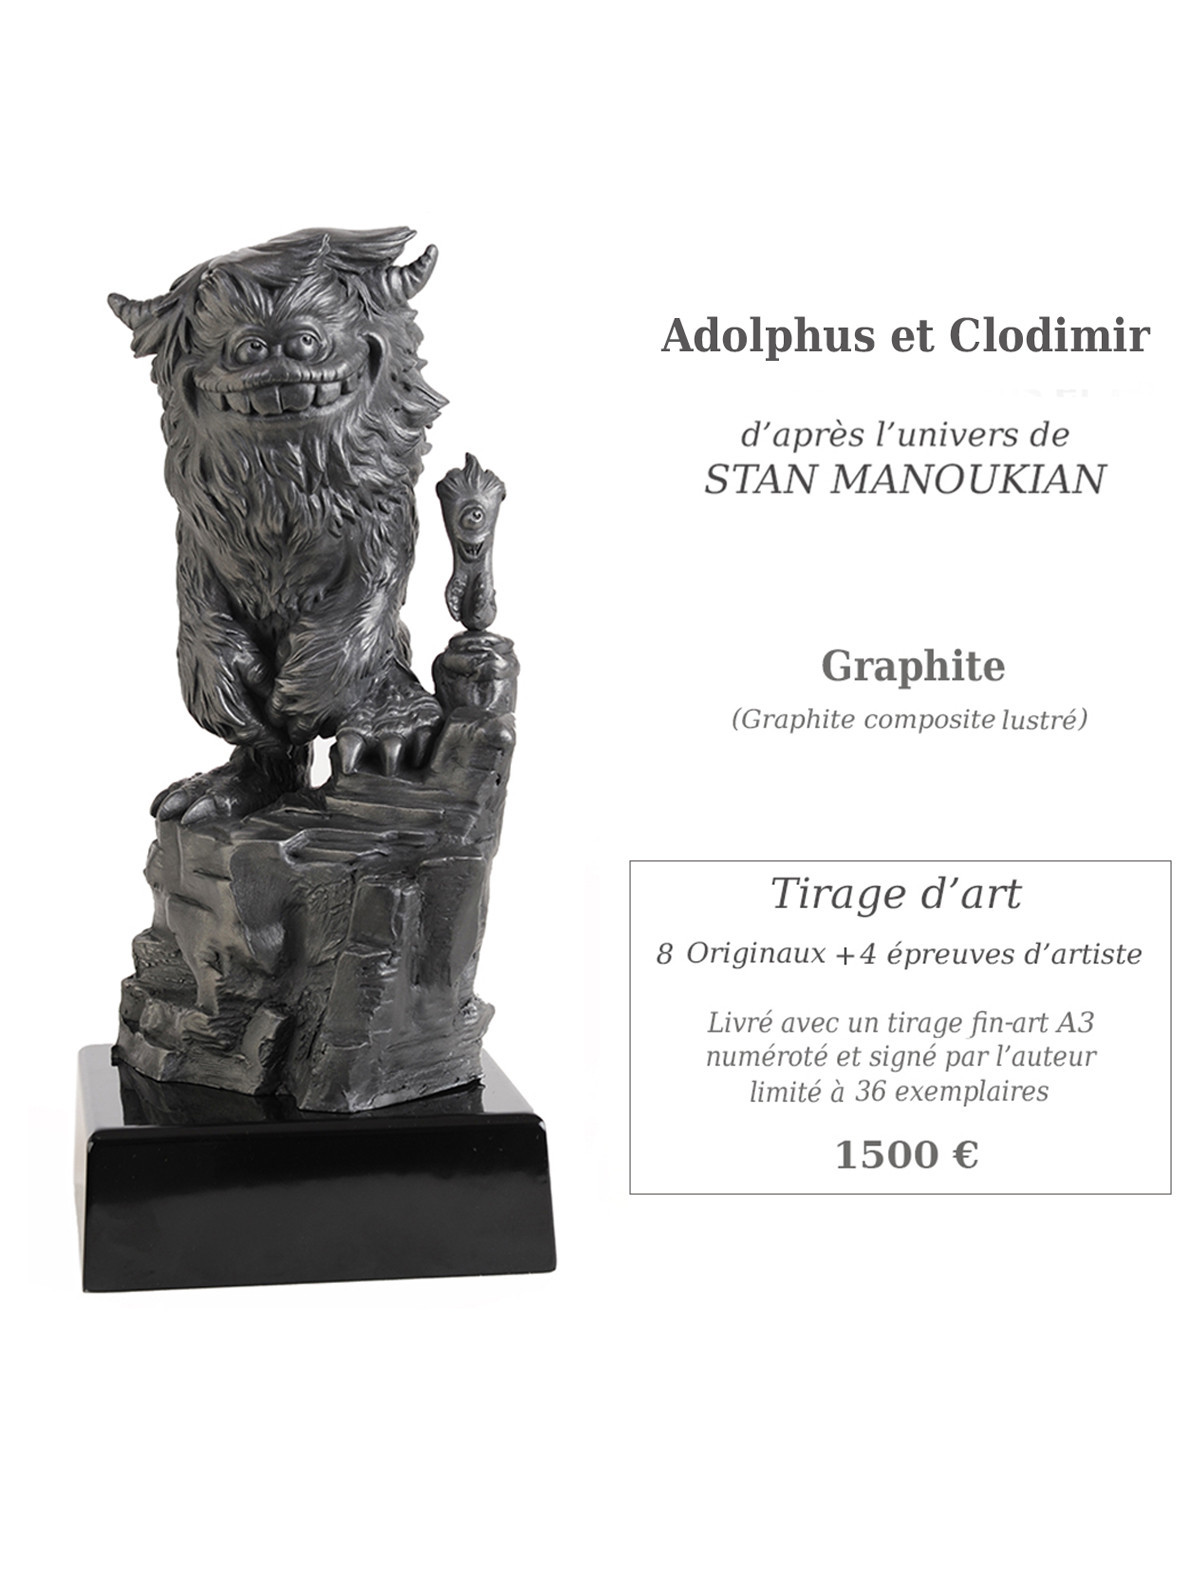 Adolphus et Clodimir - Version graphite